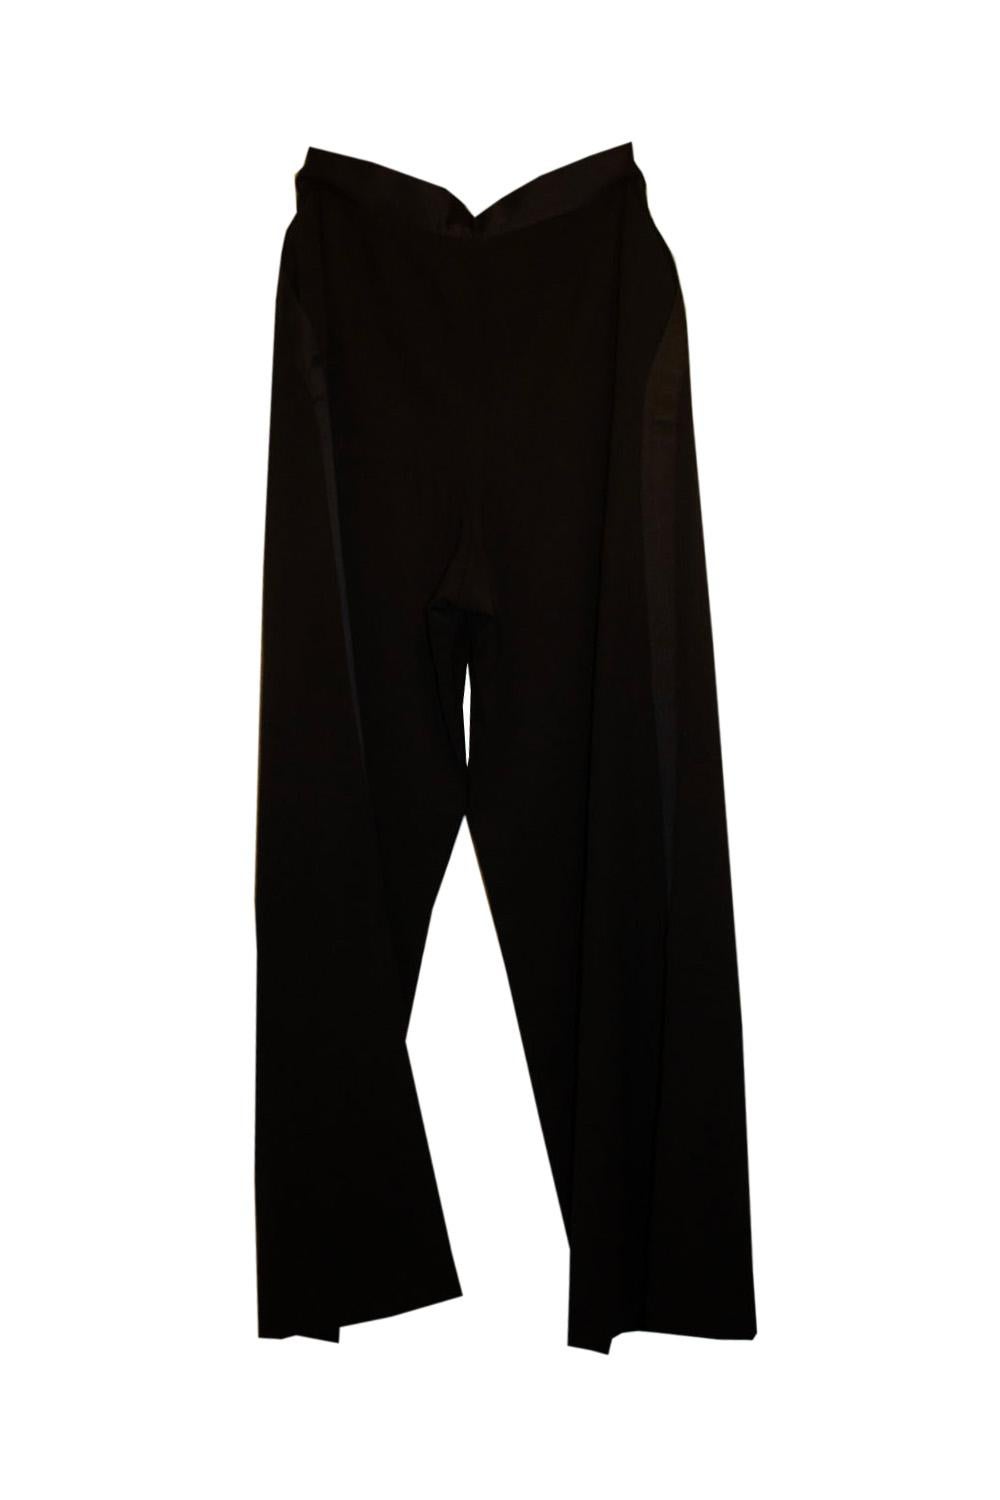 Vintage Chanel Black Tuxedo Pants /Trousers For Sale 2